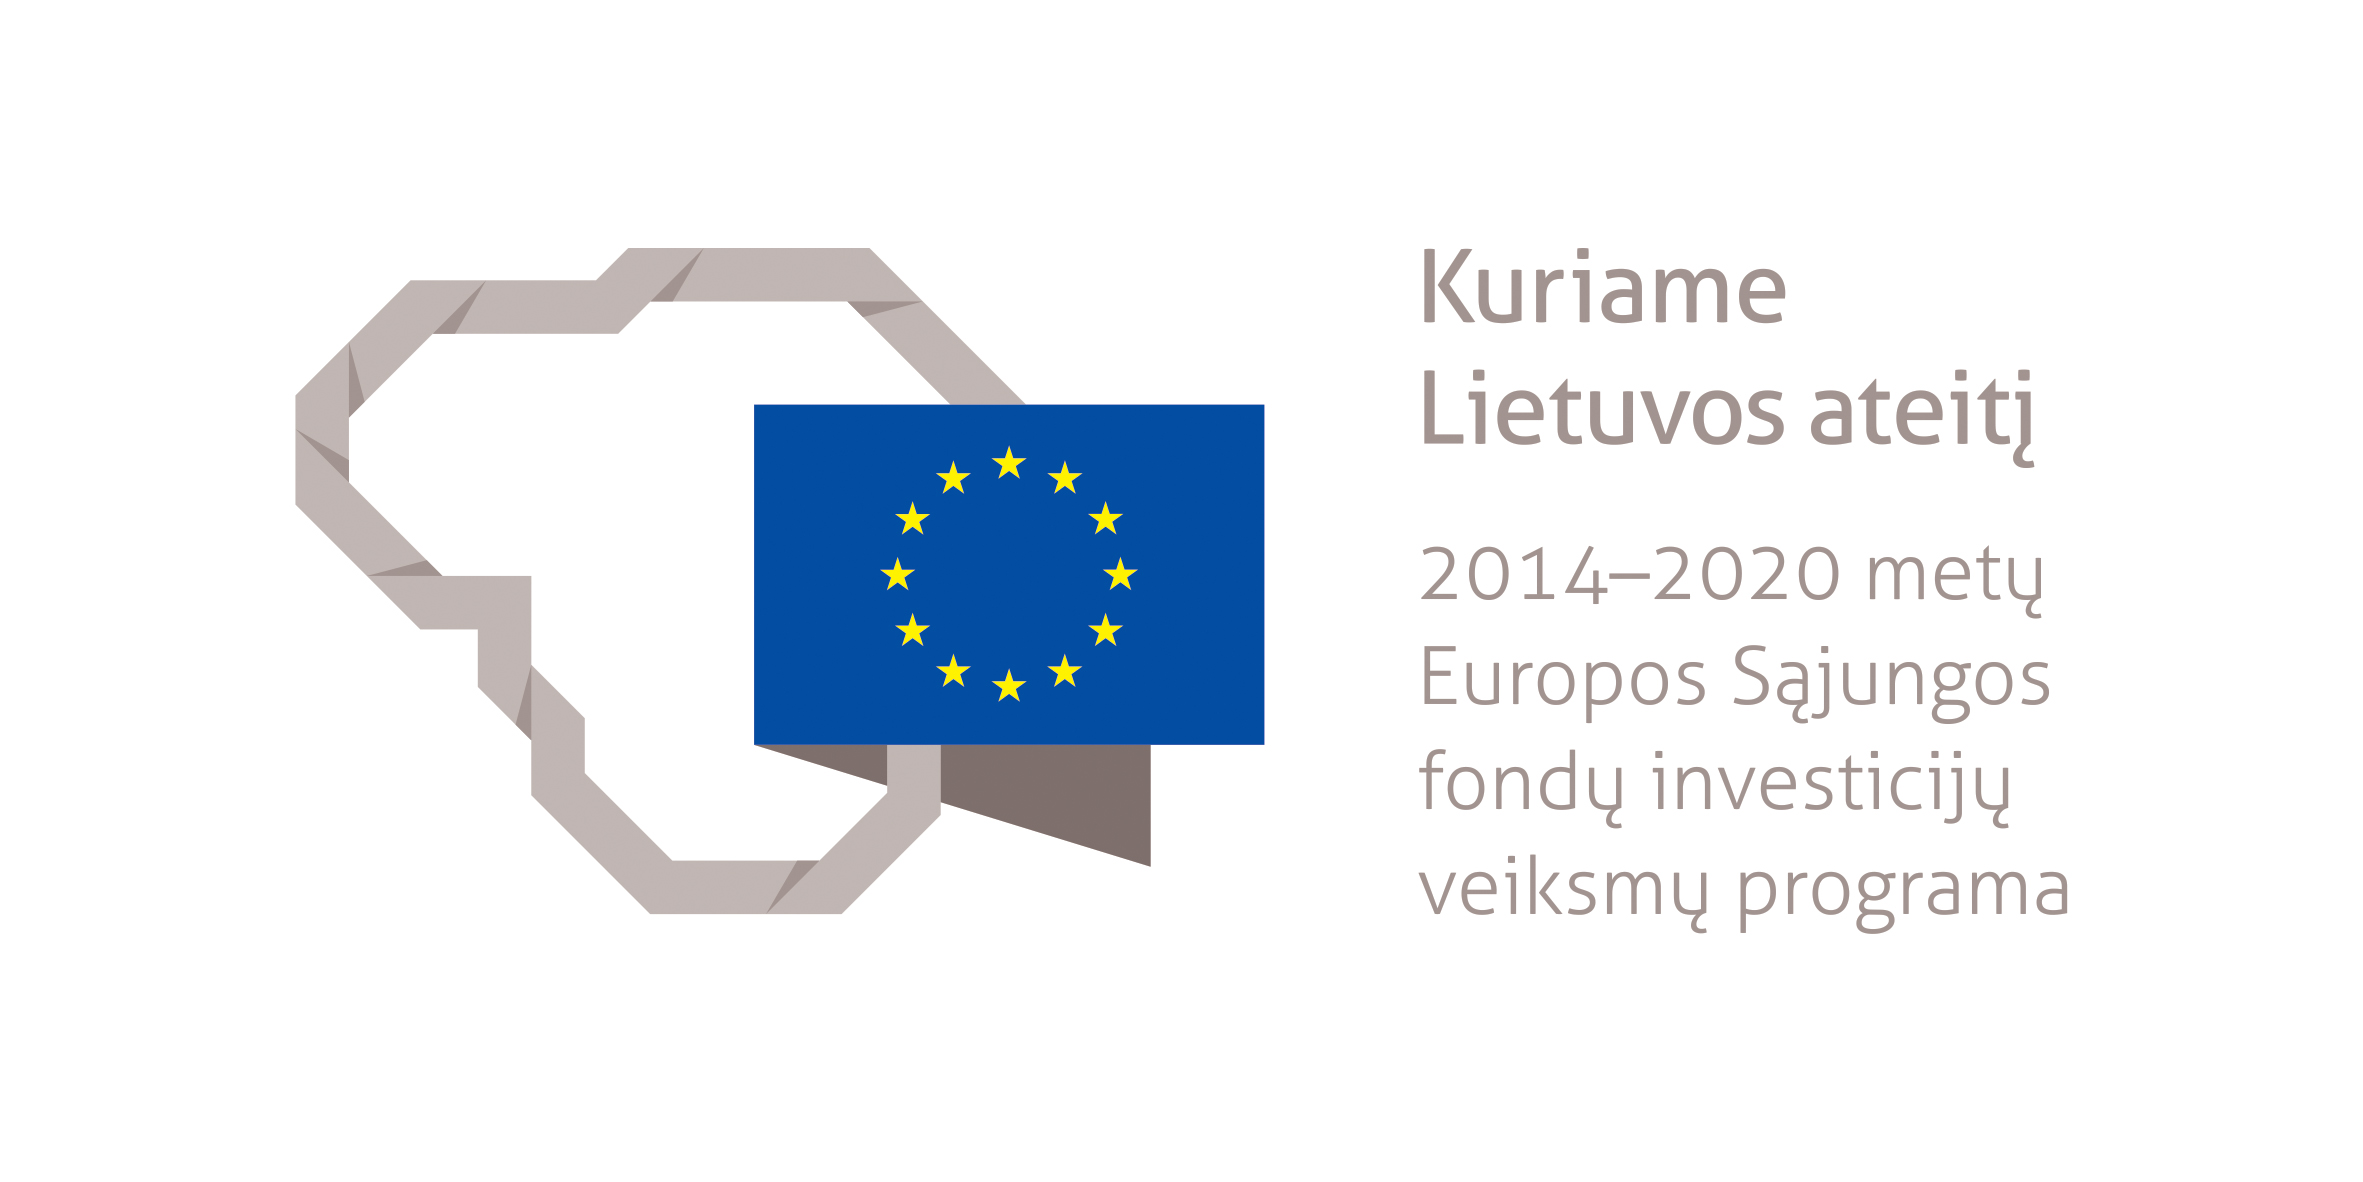 Projektas bendrai finansuotas iš Europos socialinio fondo lėšų (projekto nr. 09.3.3-LMT-K-712-25-0162) pagal dotacijos sutartį su Lietuvos mokslo taryba (LMTLT)